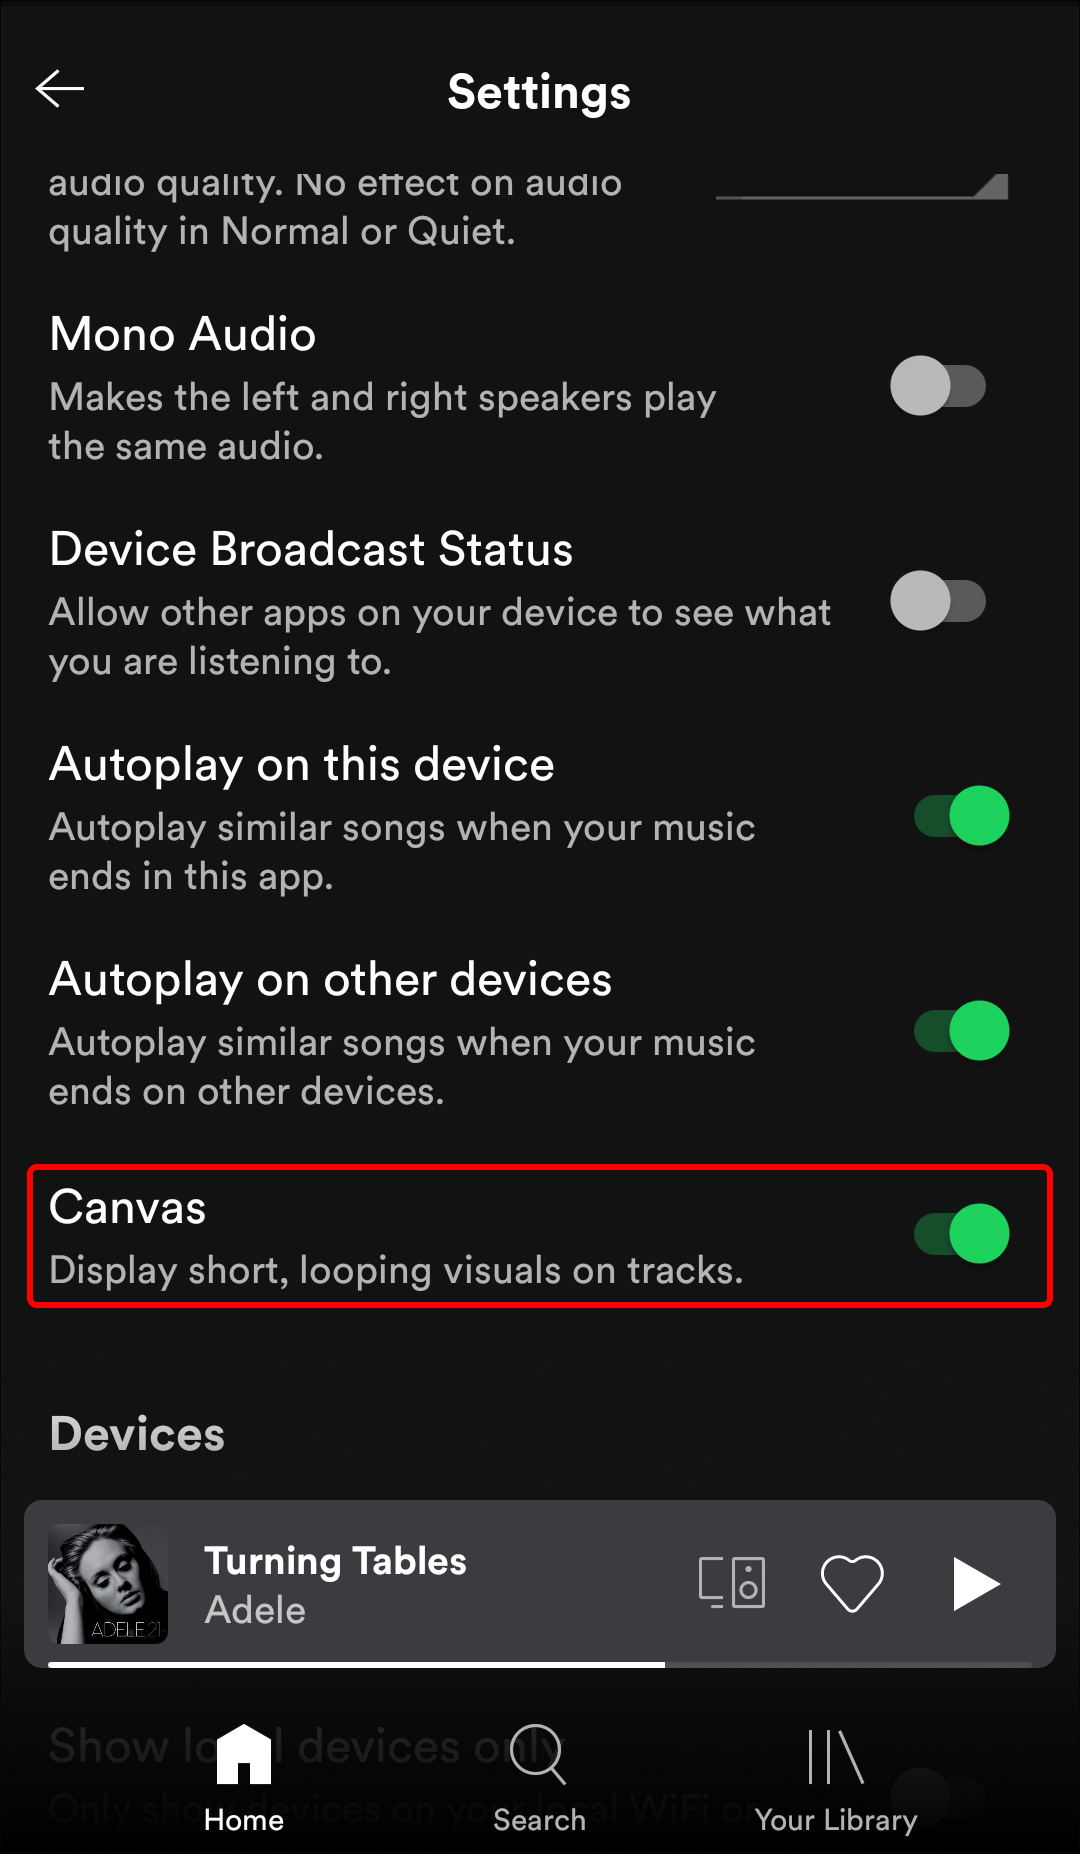 Bạn muốn kích hoạt hoặc vô hiệu hóa tính năng canvas trong ứng dụng Spotify? Cách thực hiện sẽ giúp bạn dễ dàng tùy chỉnh âm nhạc theo phong cách của riêng mình. Hãy xem hướng dẫn để tận dụng tính năng tuyệt vời này trong ứng dụng của bạn.